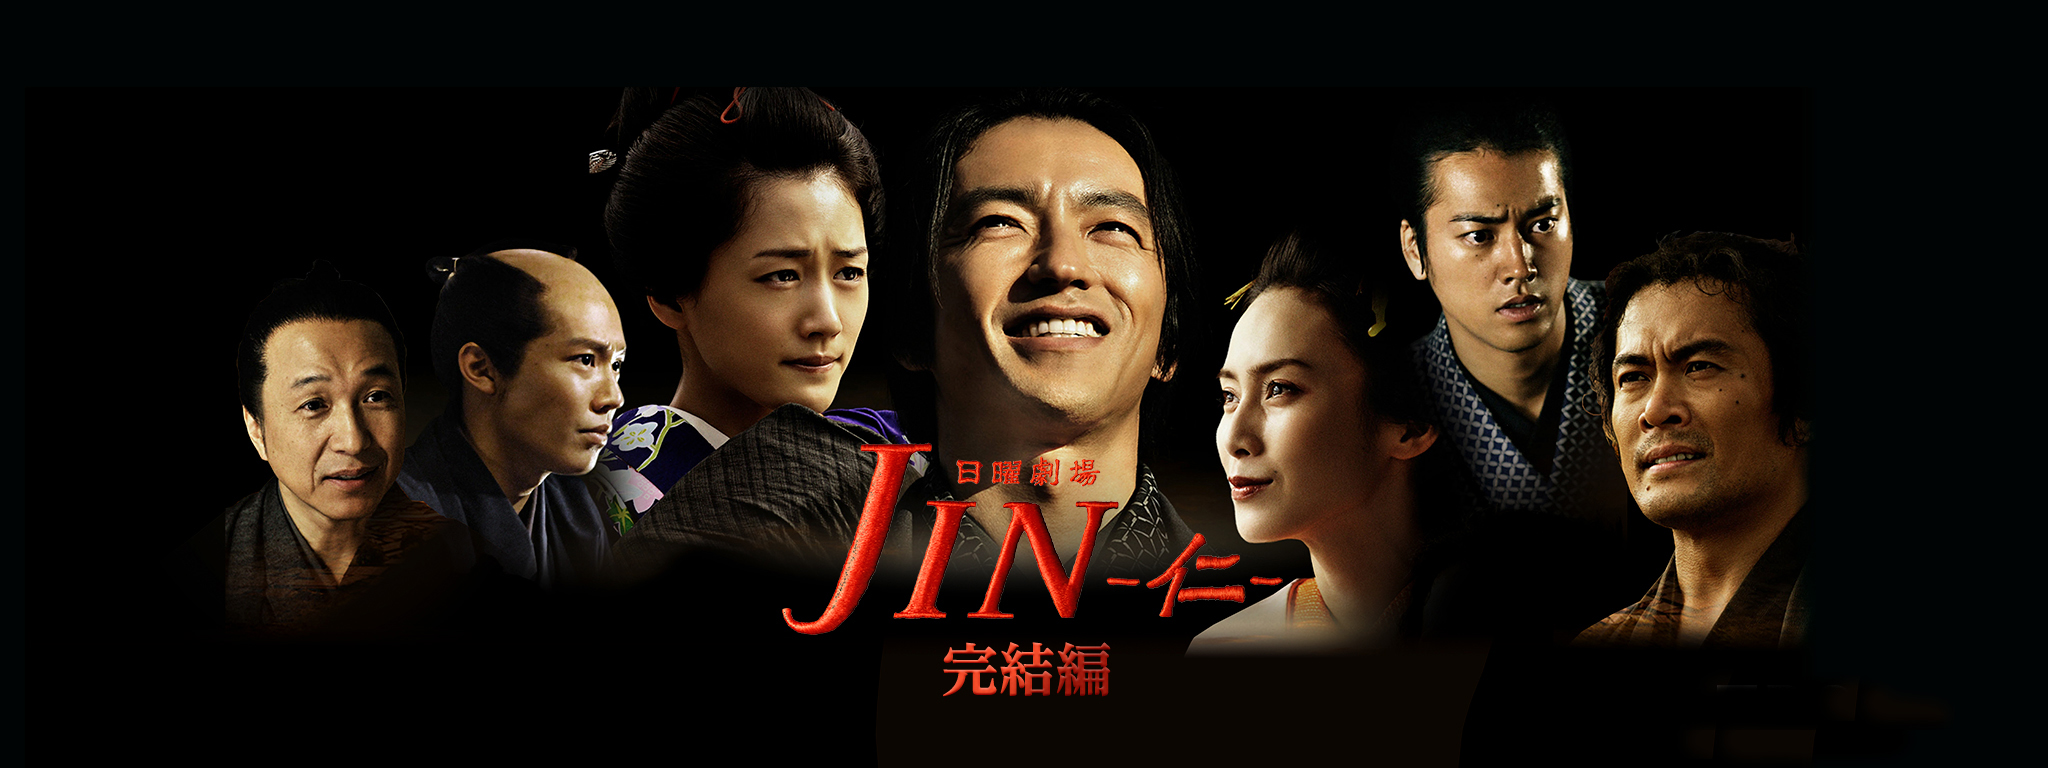 日本映画JIN-仁-